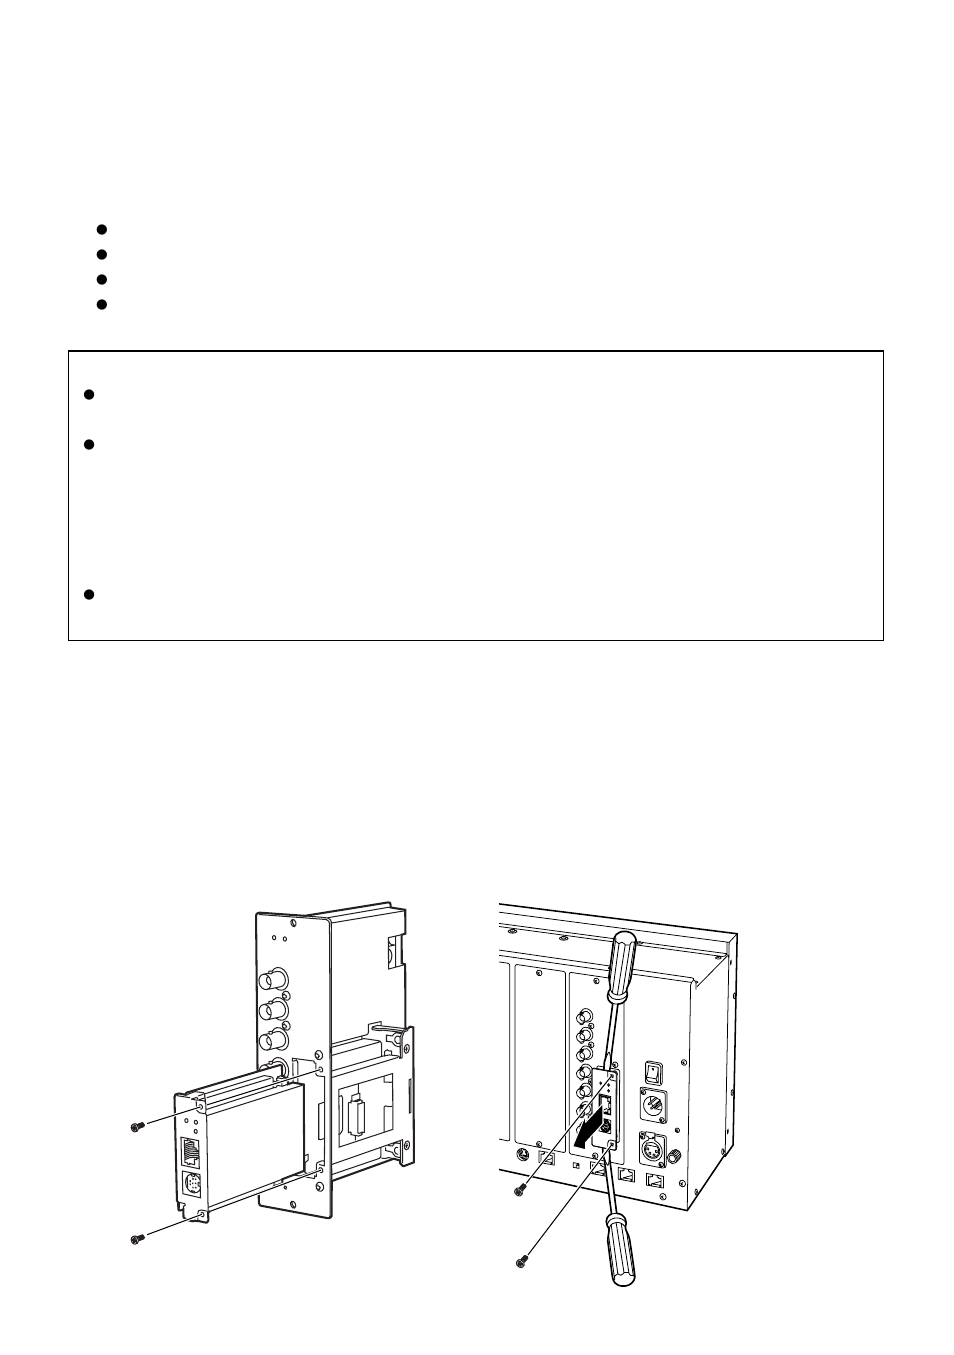 Insertion d'une plaque vendue separement, Insertion d’une plaque vendue séparément | Panasonic AW-PB605P Manuel d'utilisation | Page 13 / 16